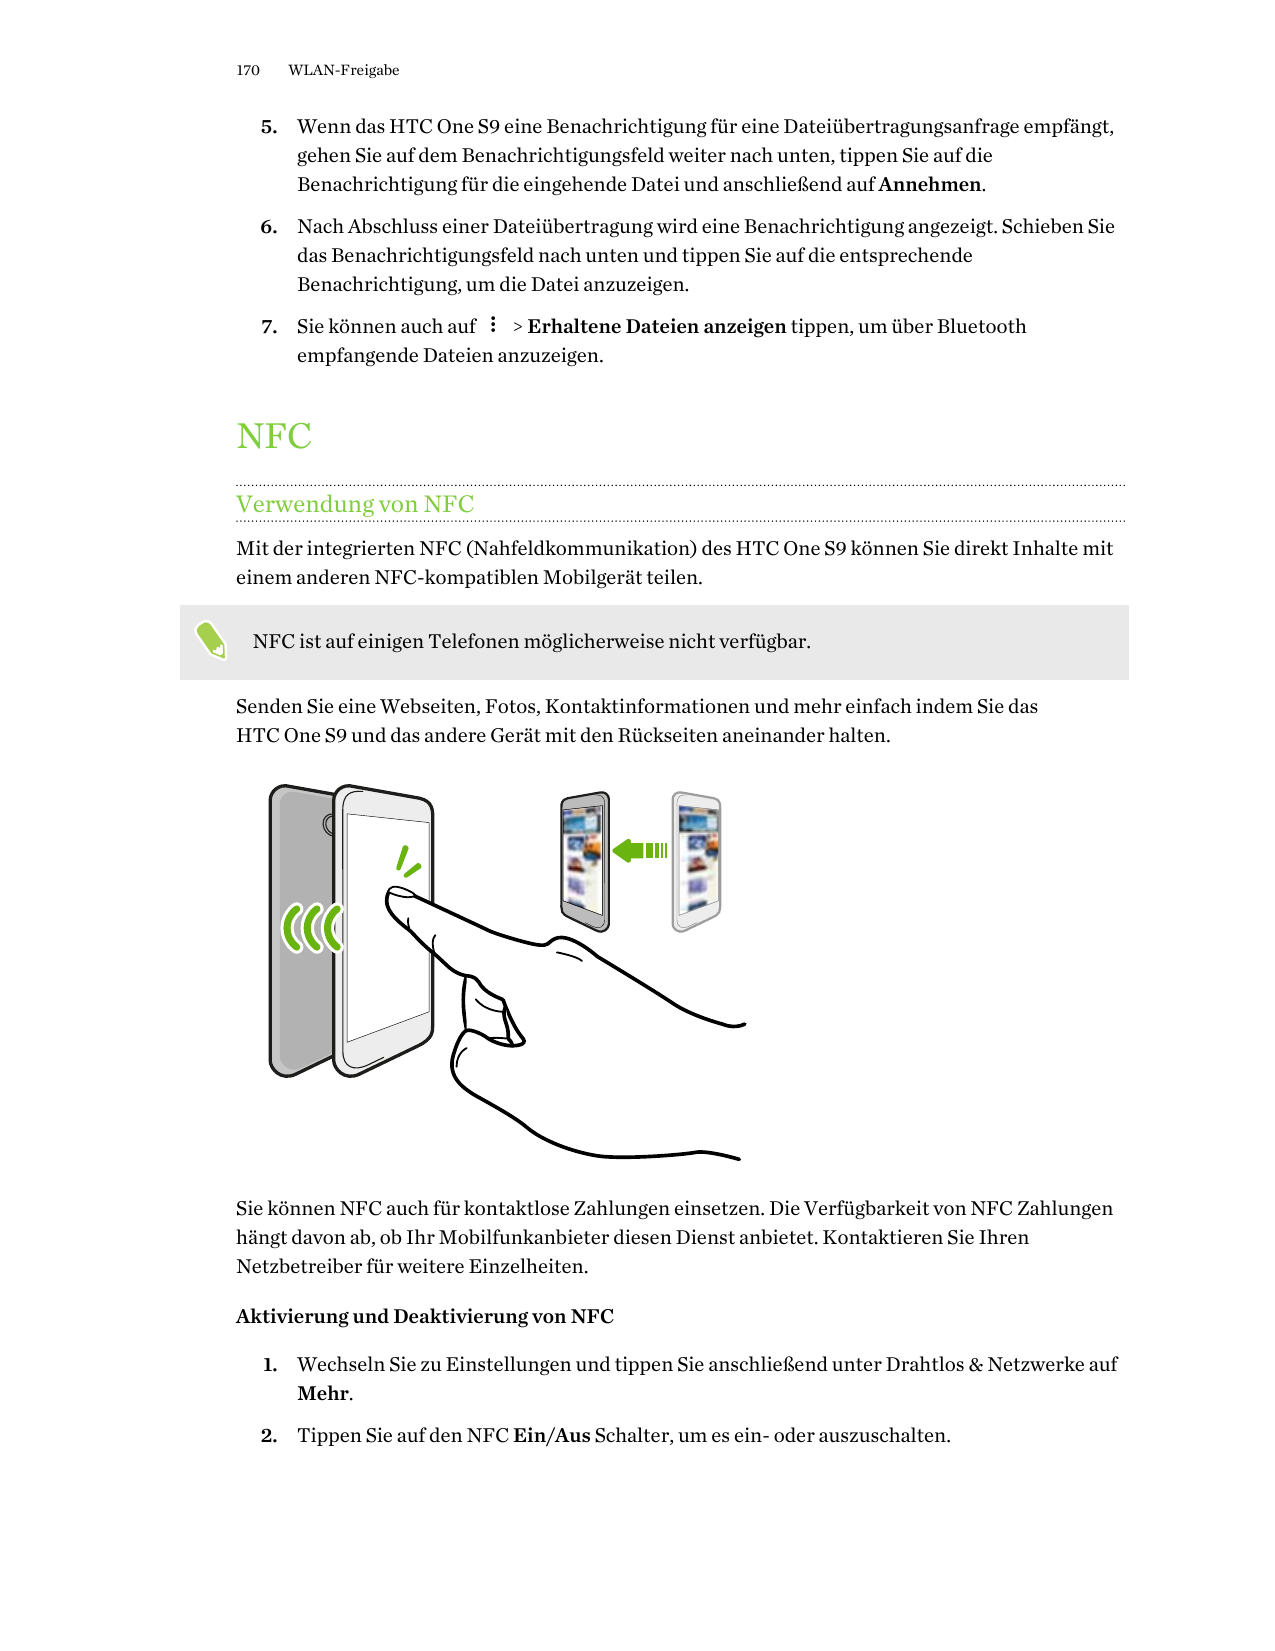 170WLAN-Freigabe5. Wenn das HTC One S9 eine Benachrichtigung für eine Dateiübertragungsanfrage empfängt,gehen Sie auf dem Benach